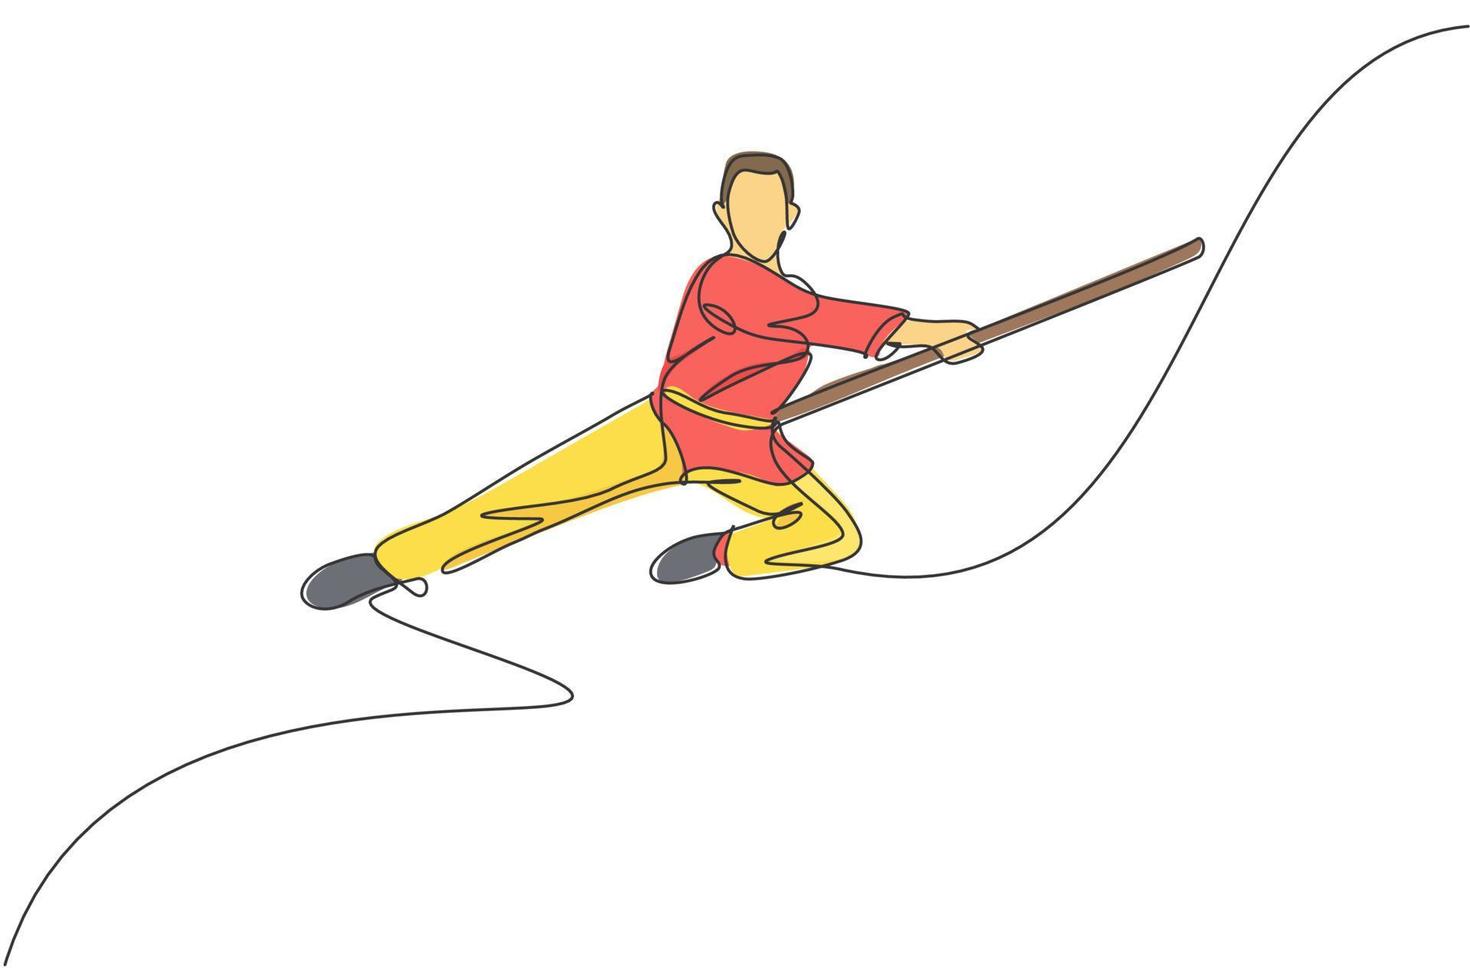 een doorlopende lijntekening van wushu-meester die springt, kungfu-krijger in kimono met lange staf op training. vechtsport sport wedstrijd concept. dynamische enkele lijn tekenen ontwerp vectorillustratie vector